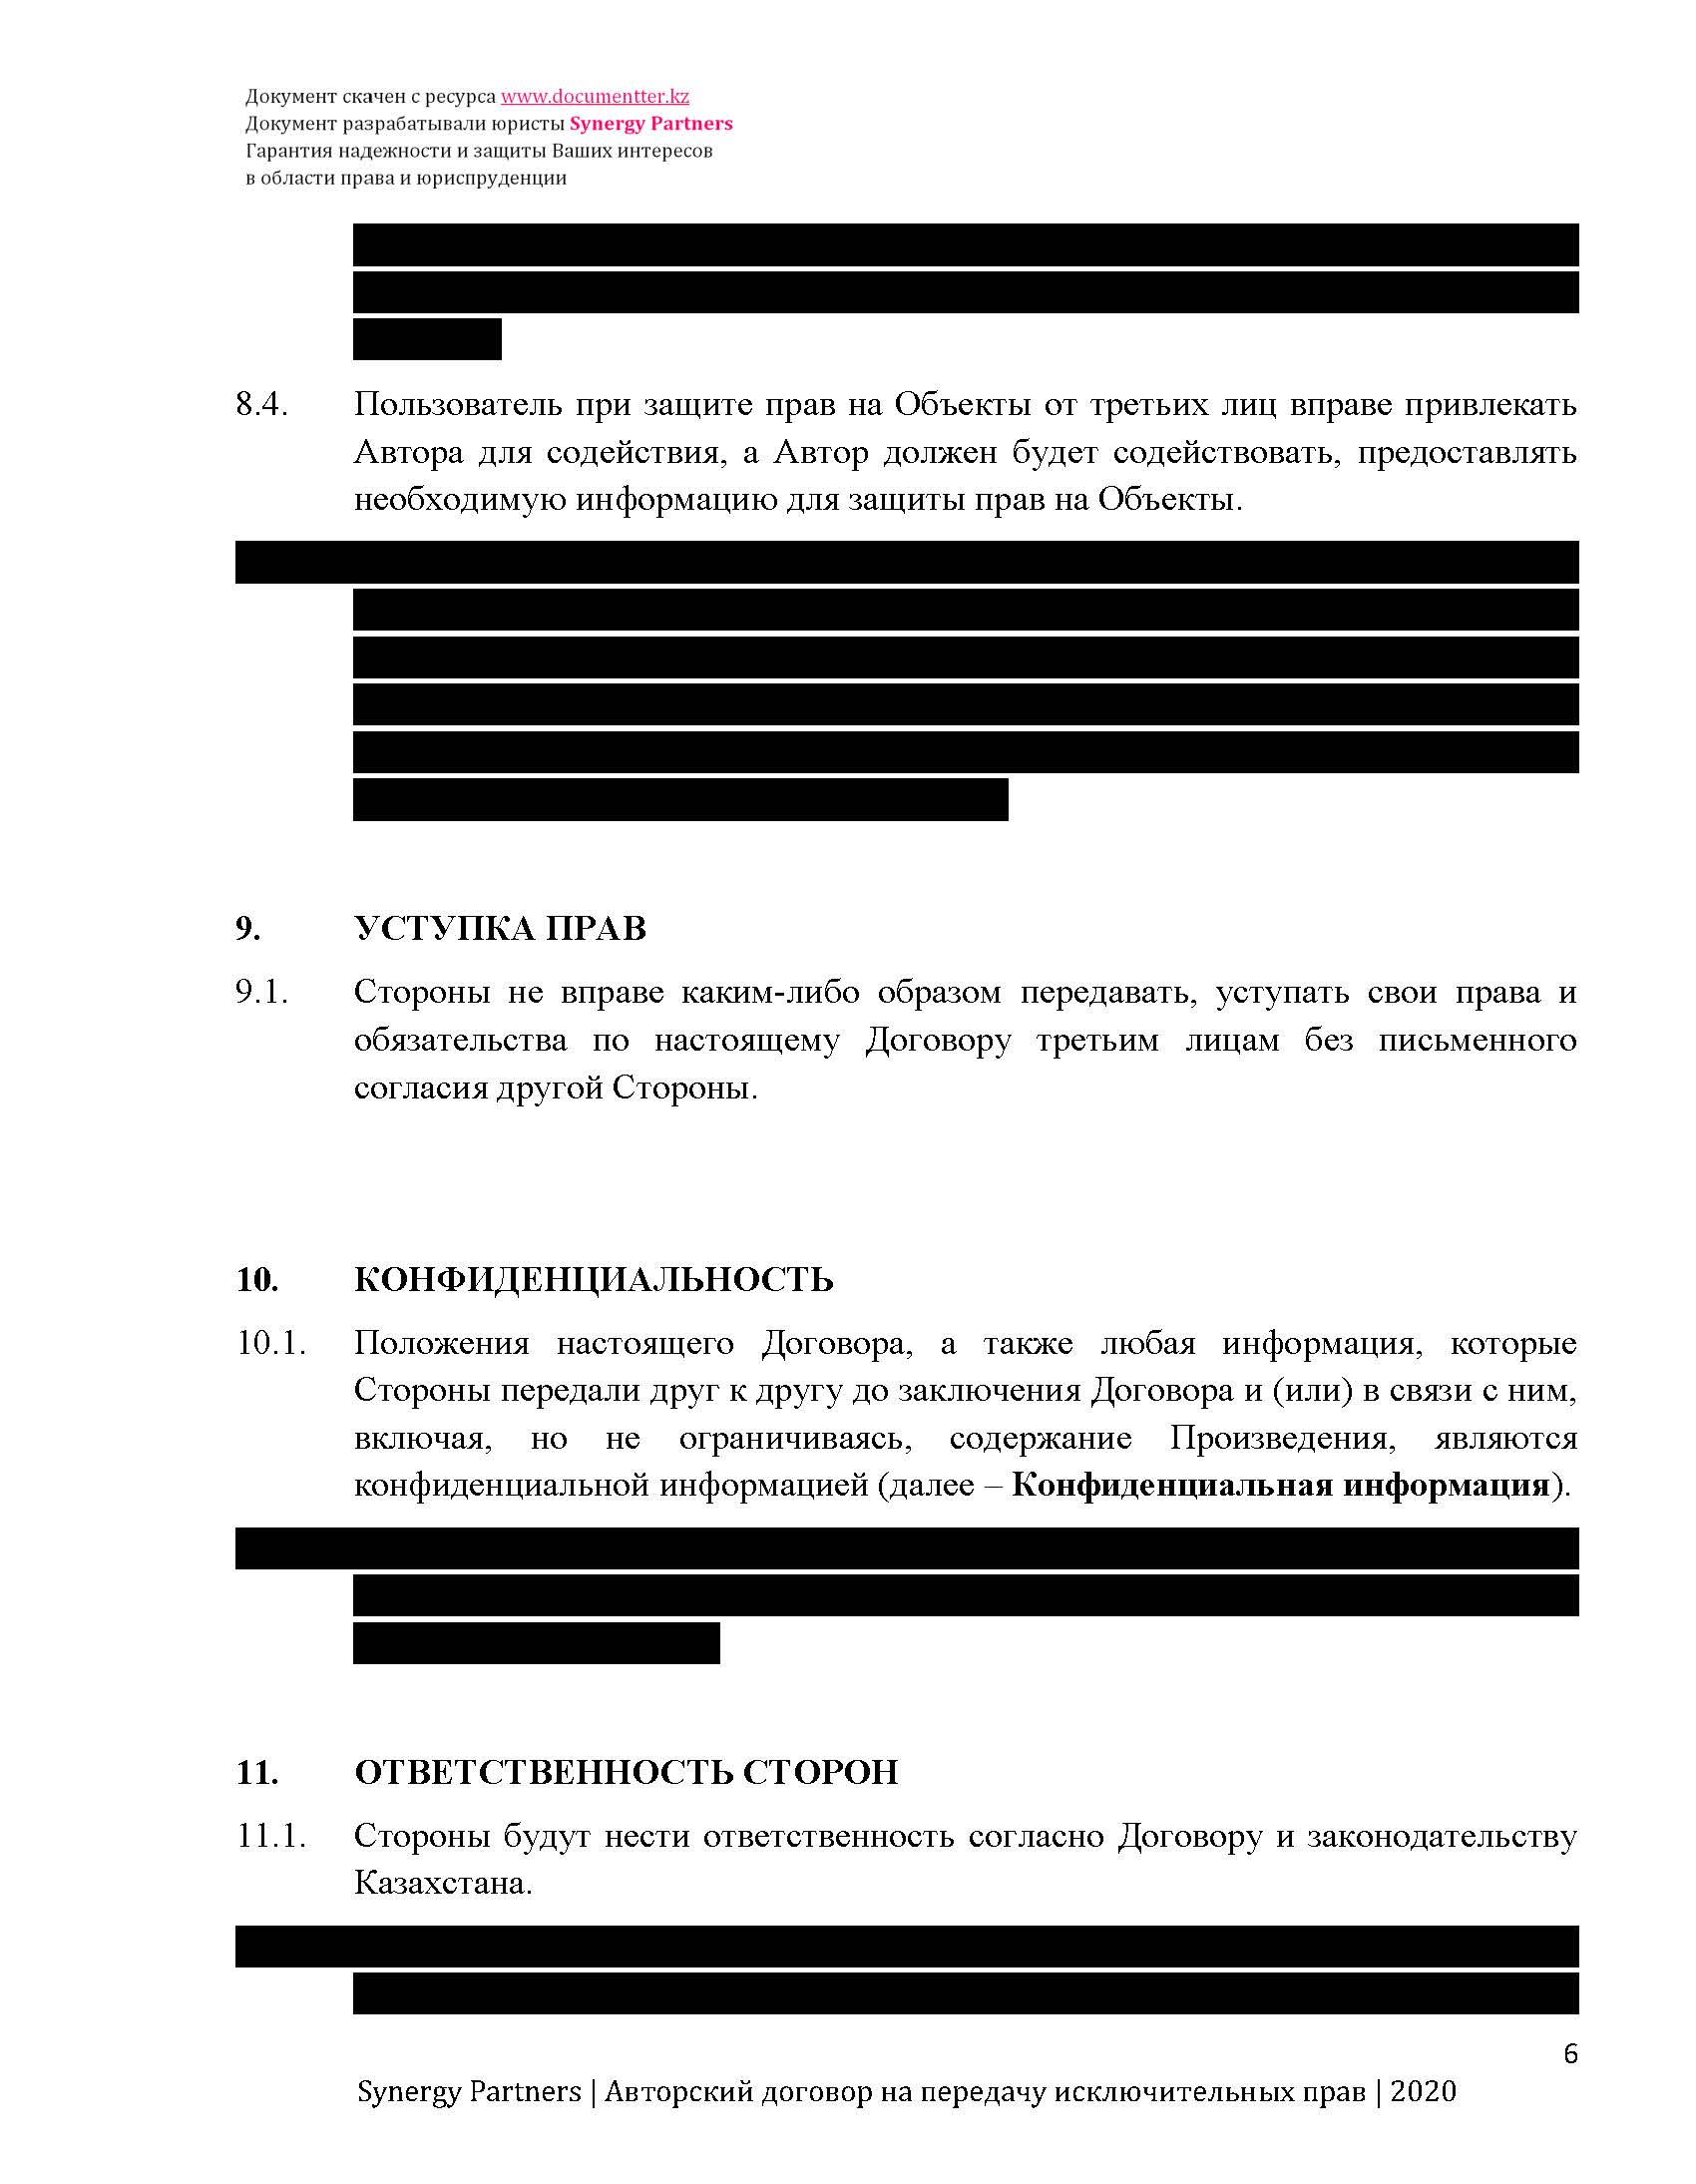 Авторский договор на передачу авторских прав для литературных произведений (исключительная лицензия) | documentterkz.com в Казахстане